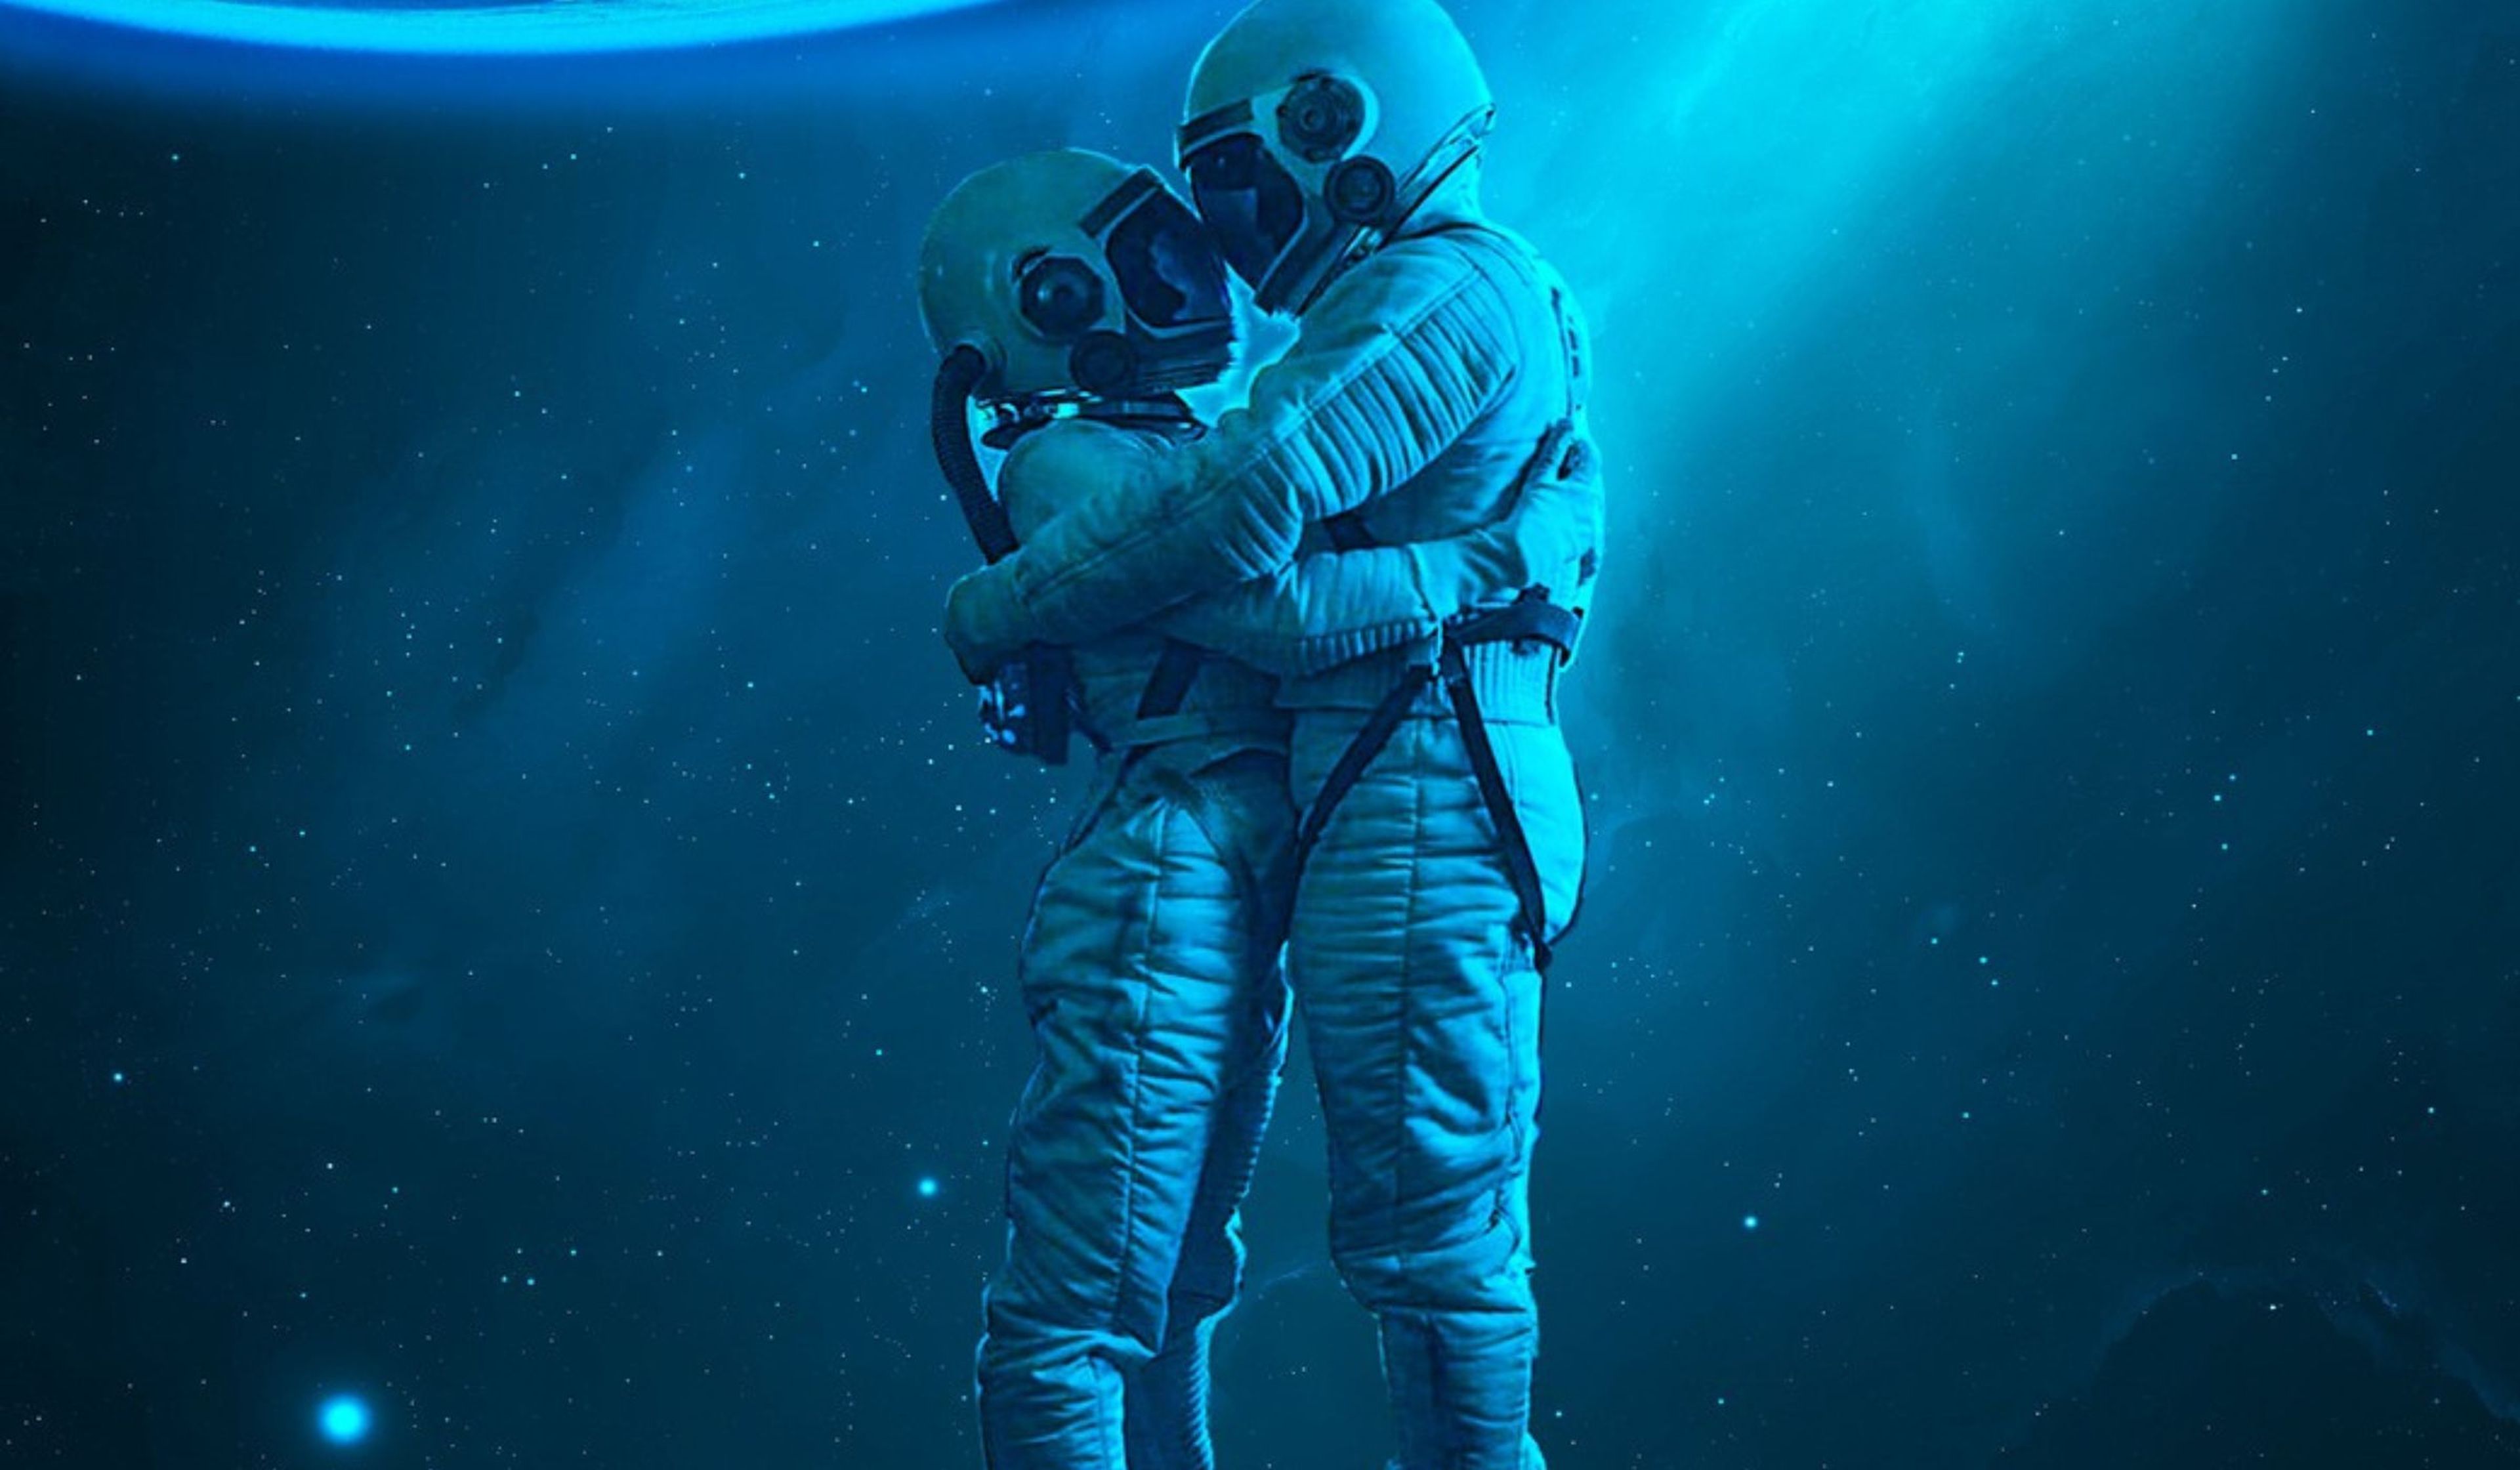 Turismo espacial: ¿Es seguro mantener relaciones íntimas fuera del planeta? 